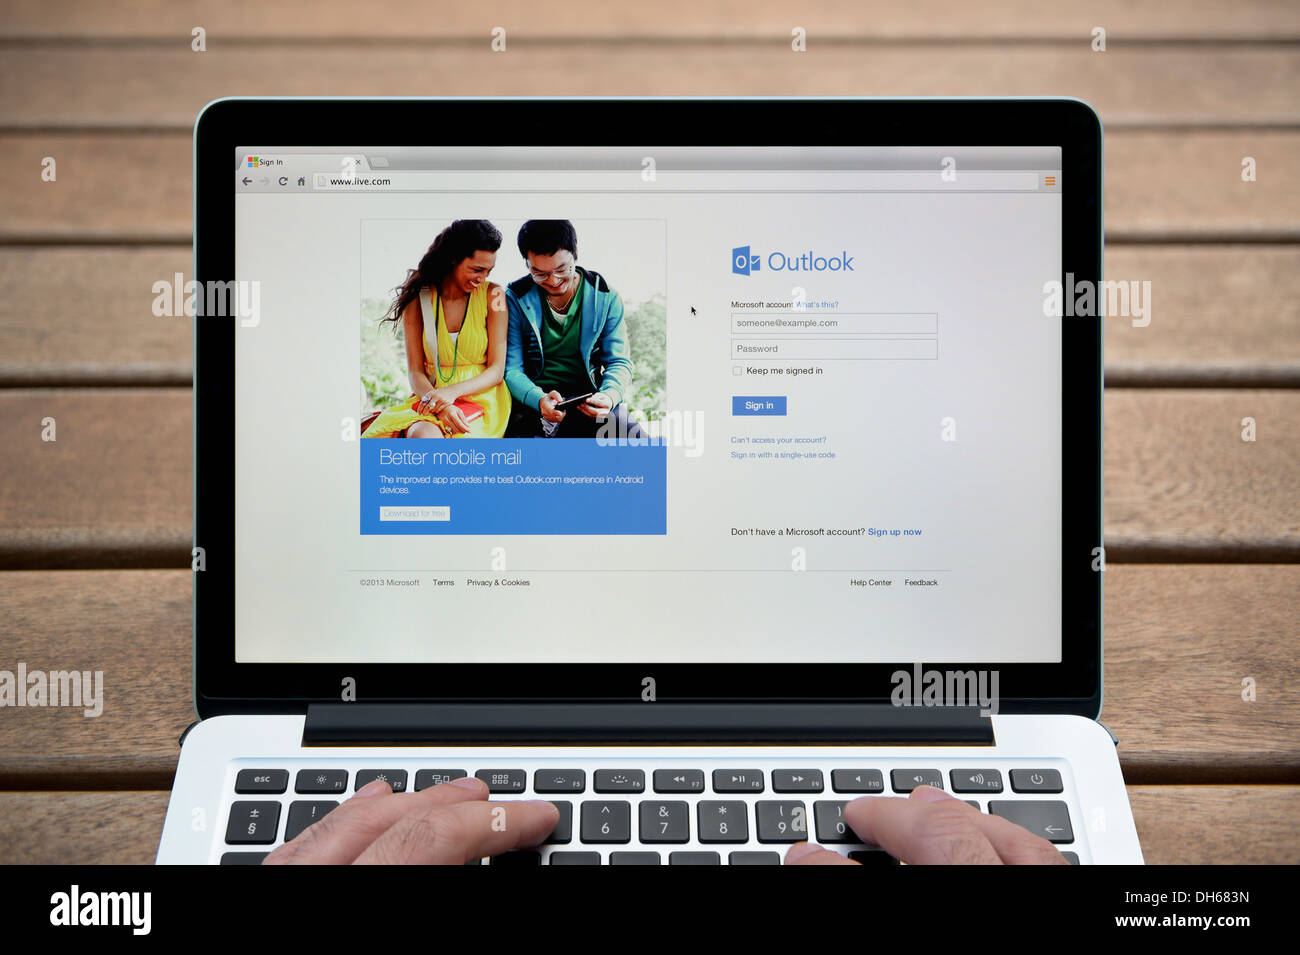 El sitio web de Windows Live en un MacBook contra un banco de madera de fondo al aire libre incluyendo un hombre de dedos (uso Editorial solamente). Foto de stock